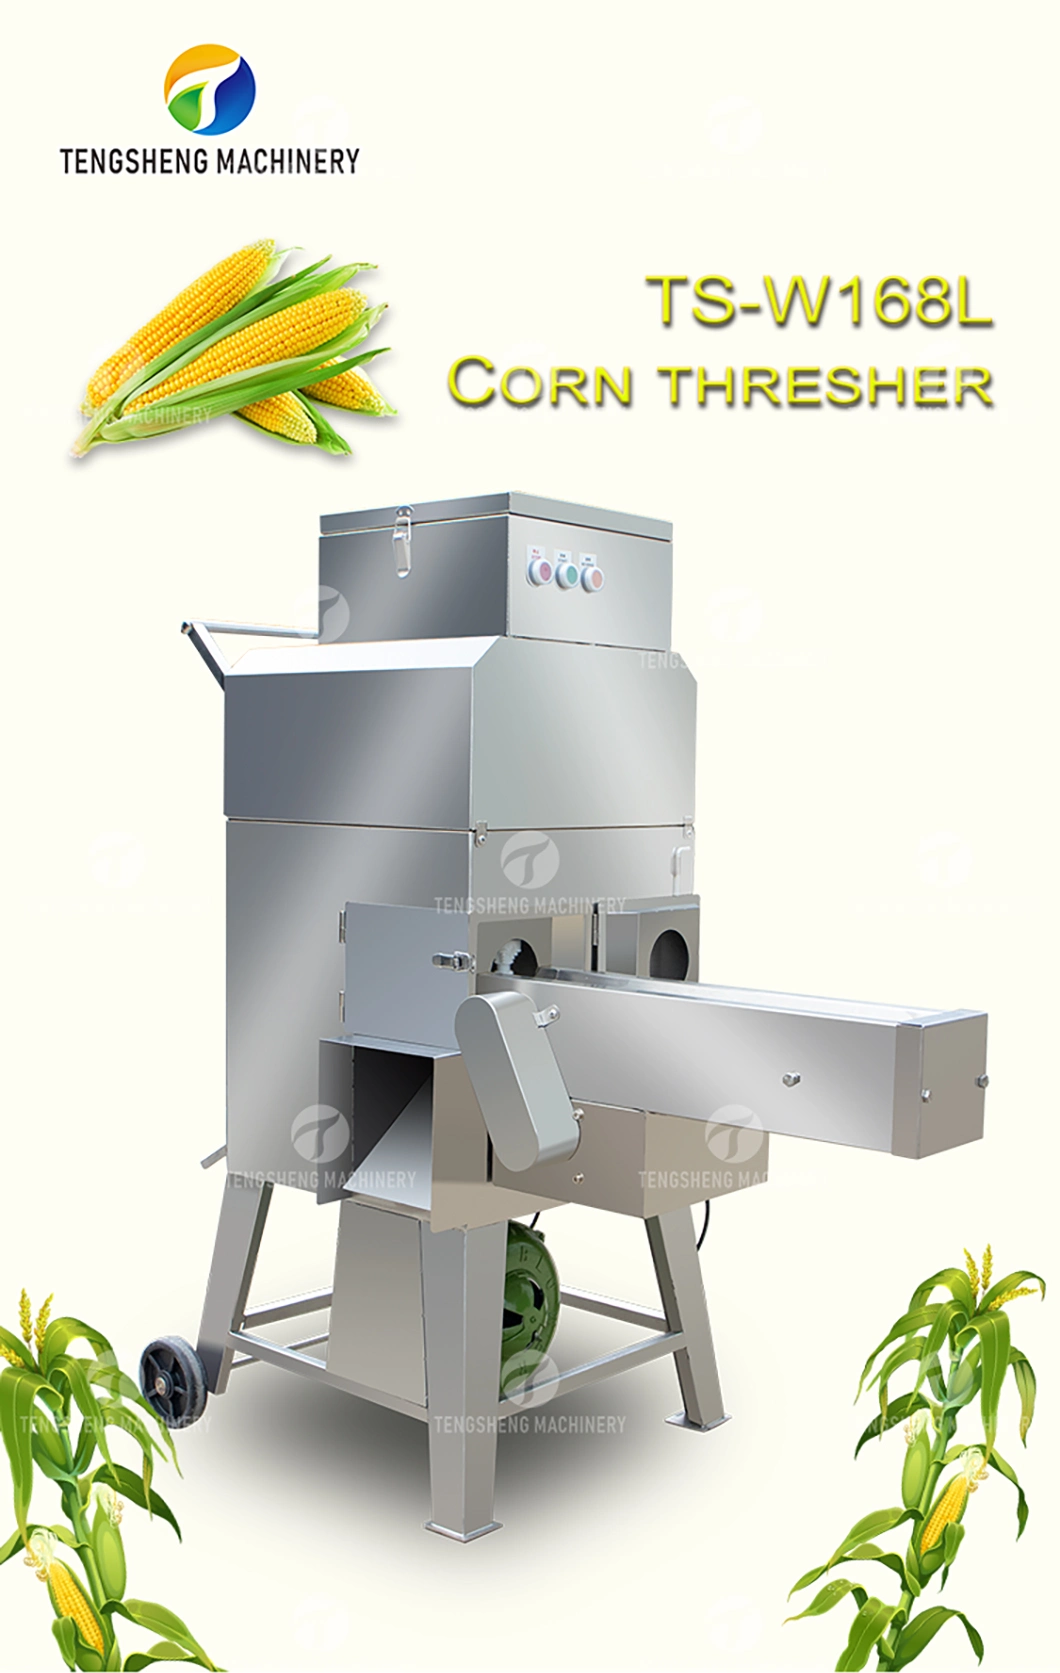 Tengsheng Low Price Sweet Corn Thresher Factory North Fresh Corn Threshing Machine (TS-W168L)